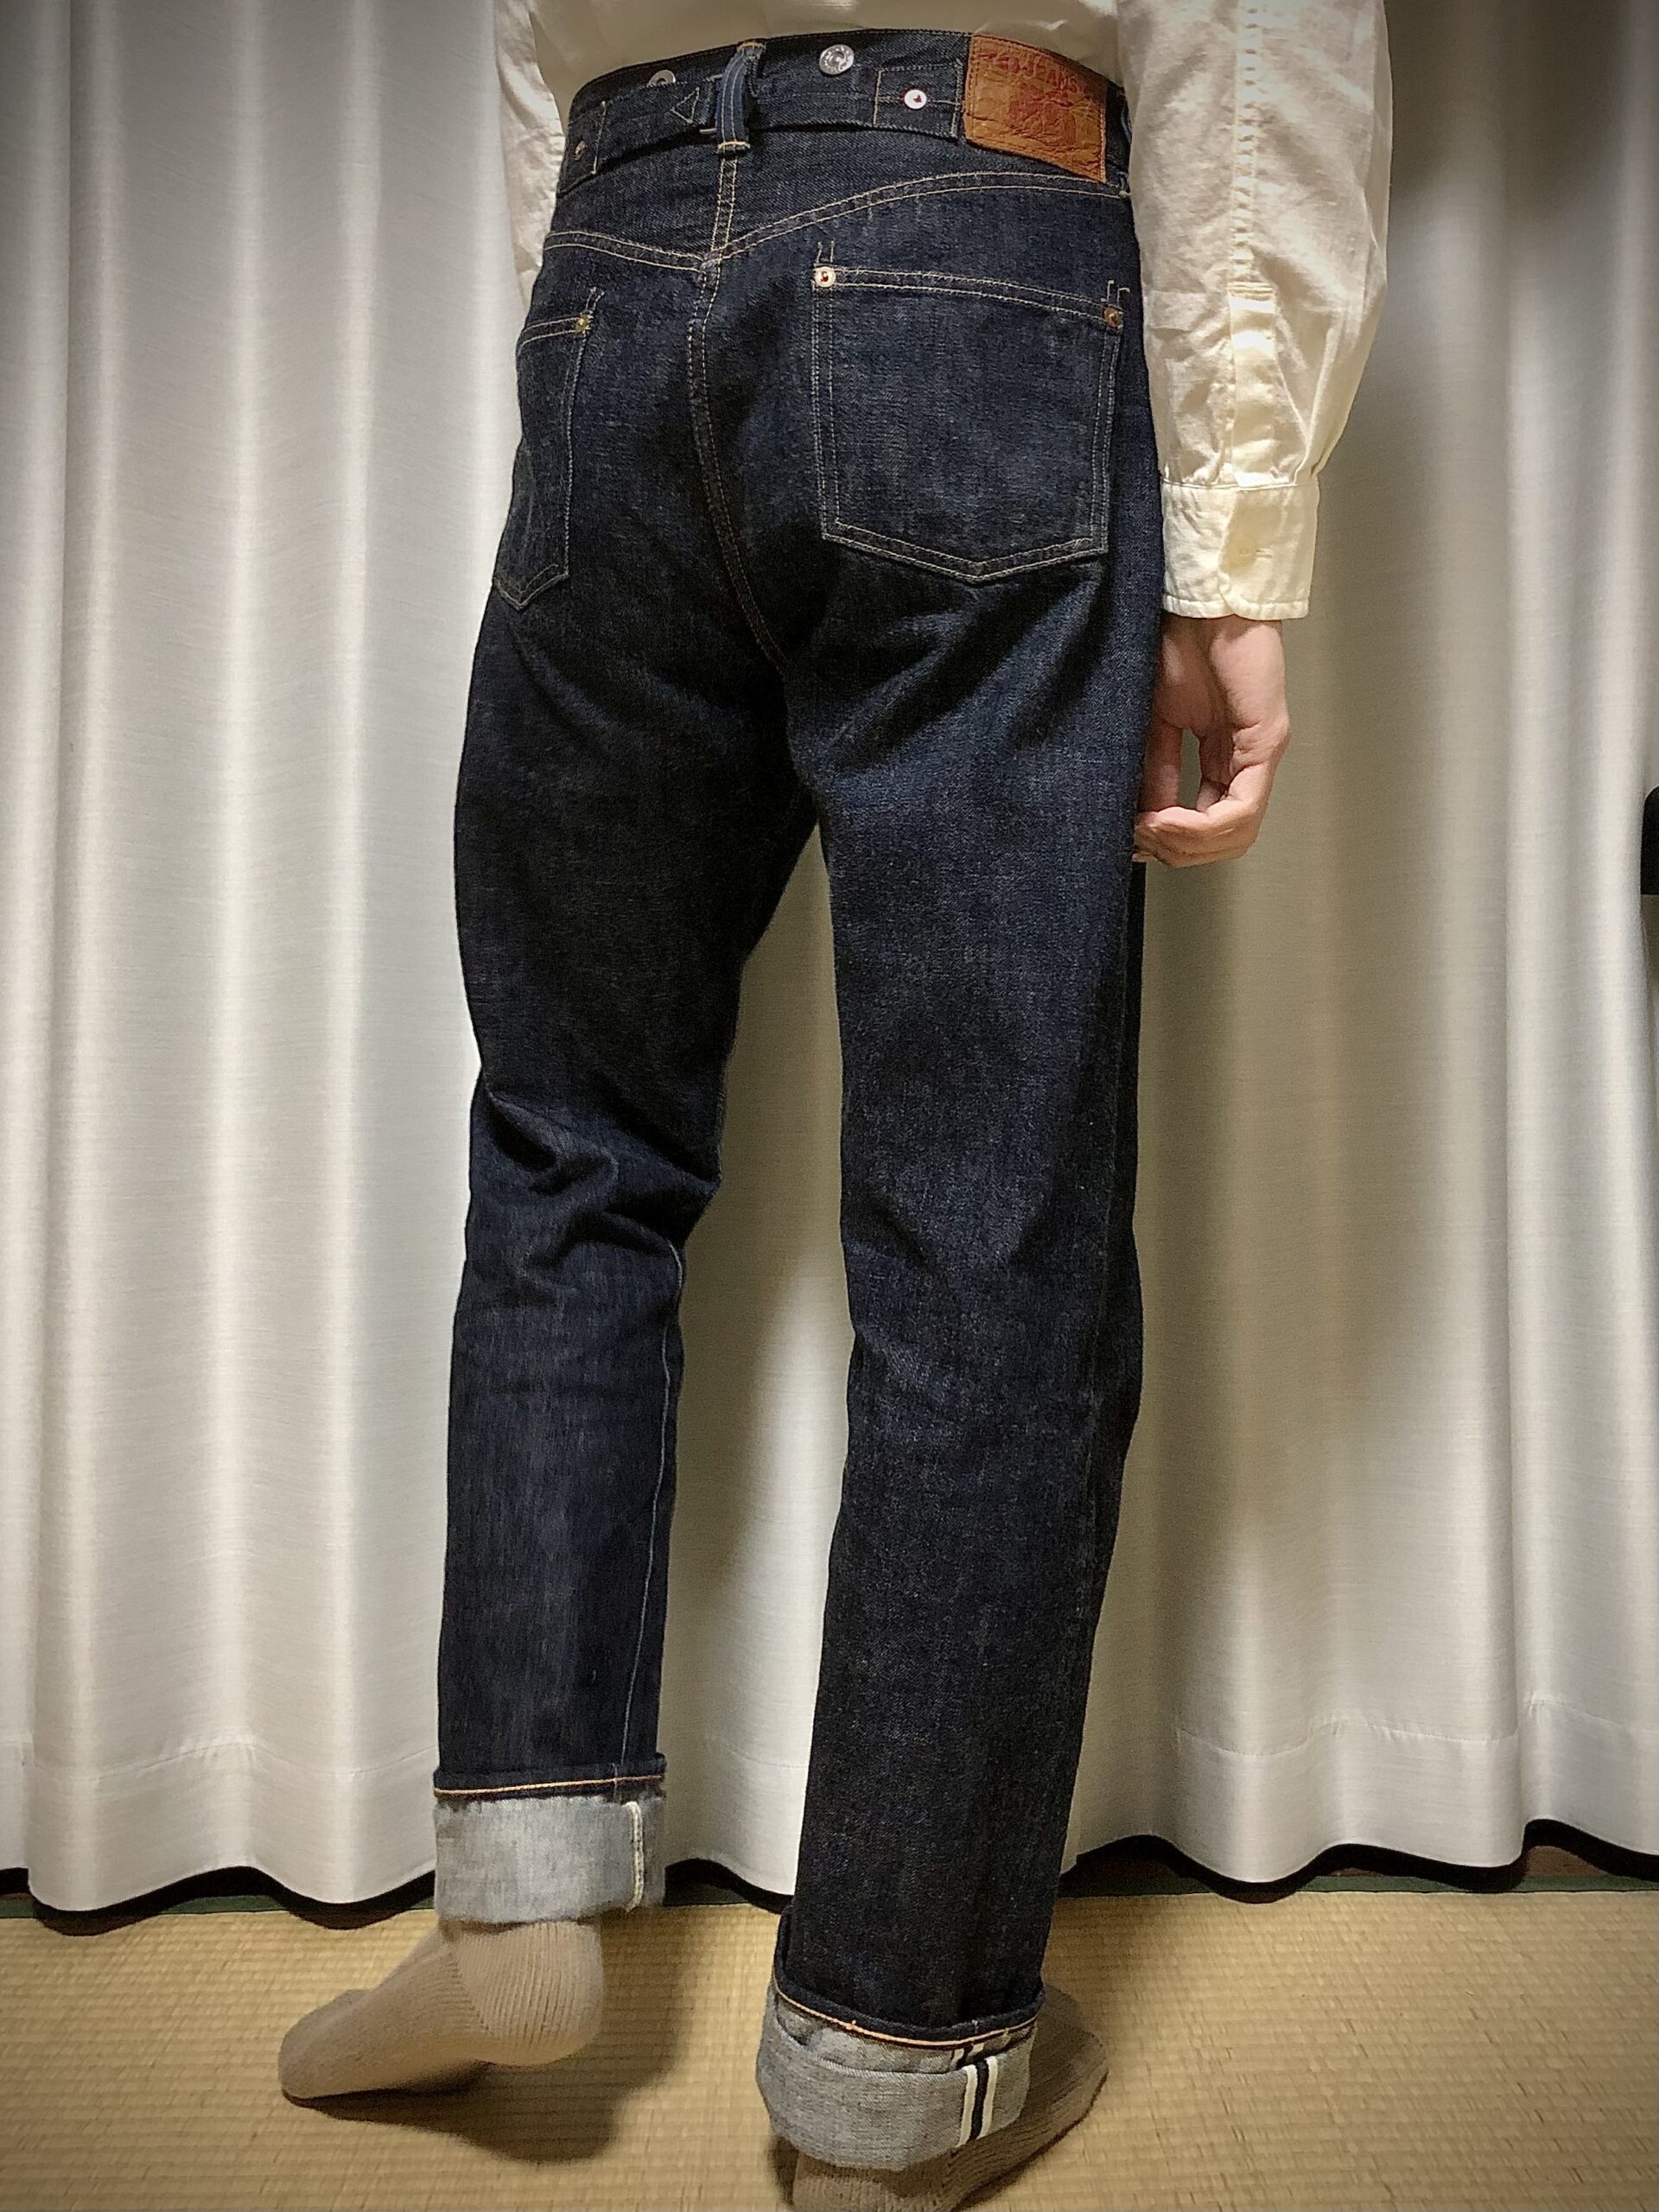 【ジーンズ好き必見】話題のTCB jeansの魅力と20sジーンズ | シフクのアメカジ